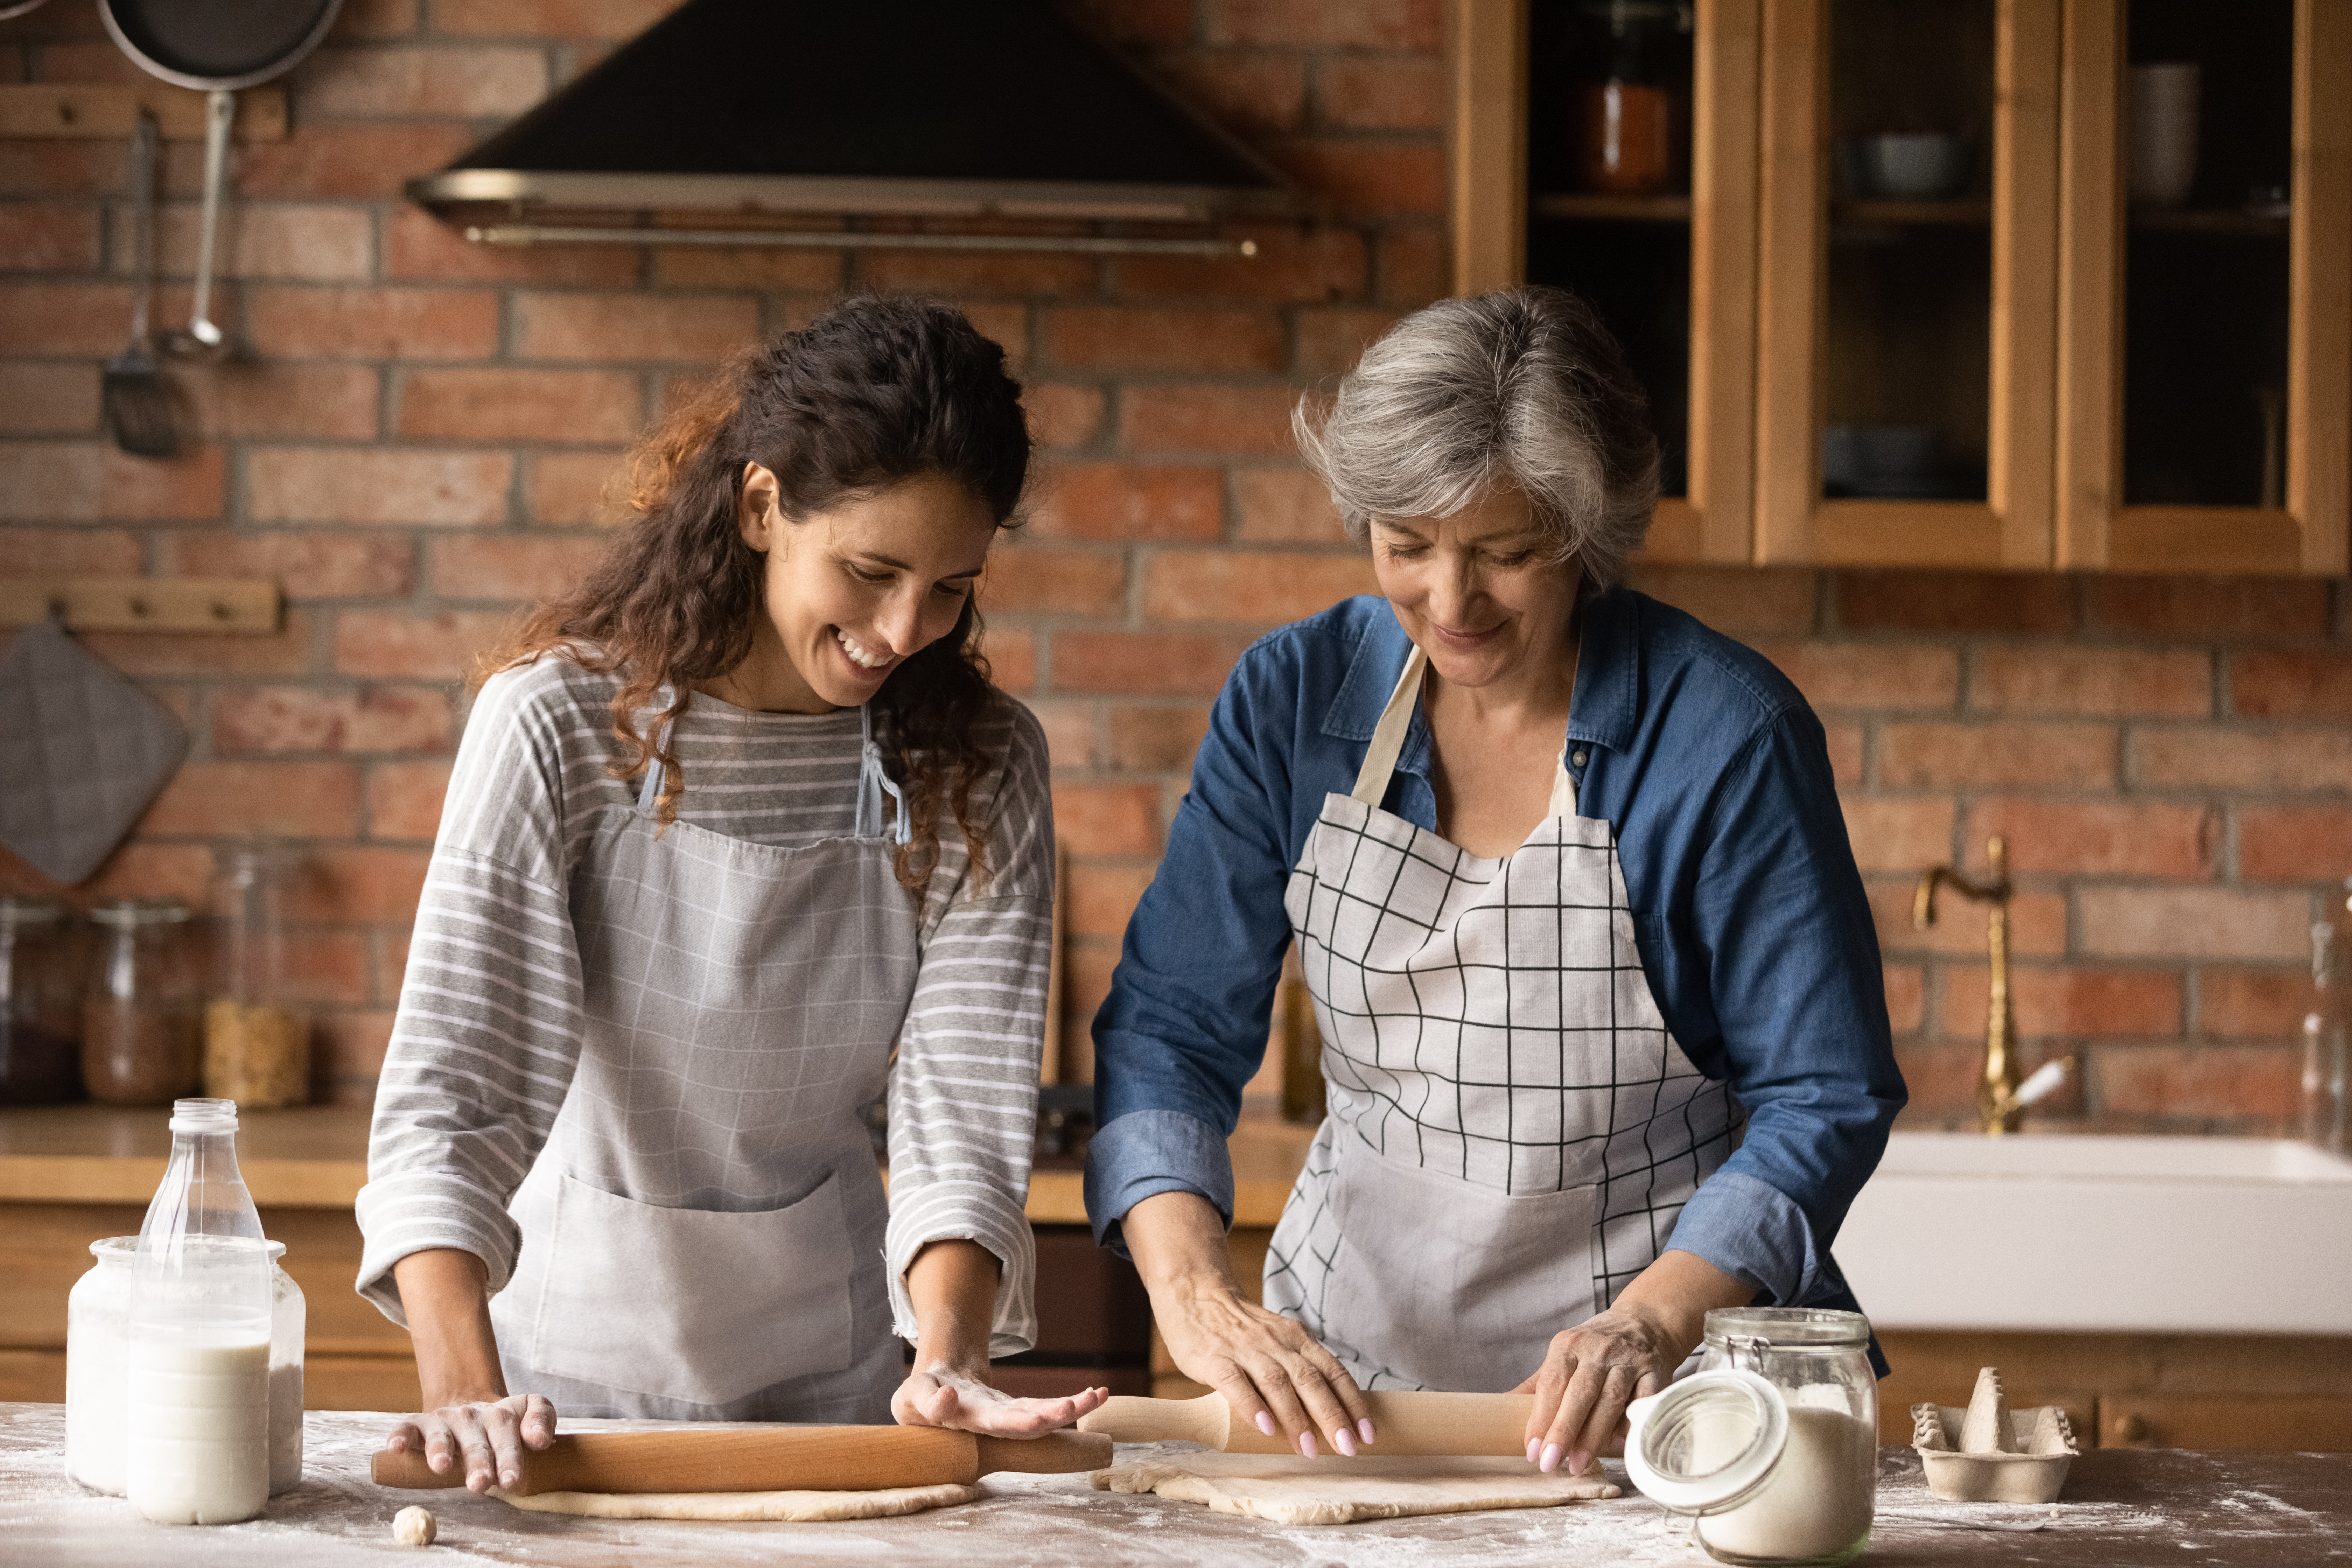 Une jeune femme et une femme plus âgée sont en train de cuisiner | Source : Shutterstock